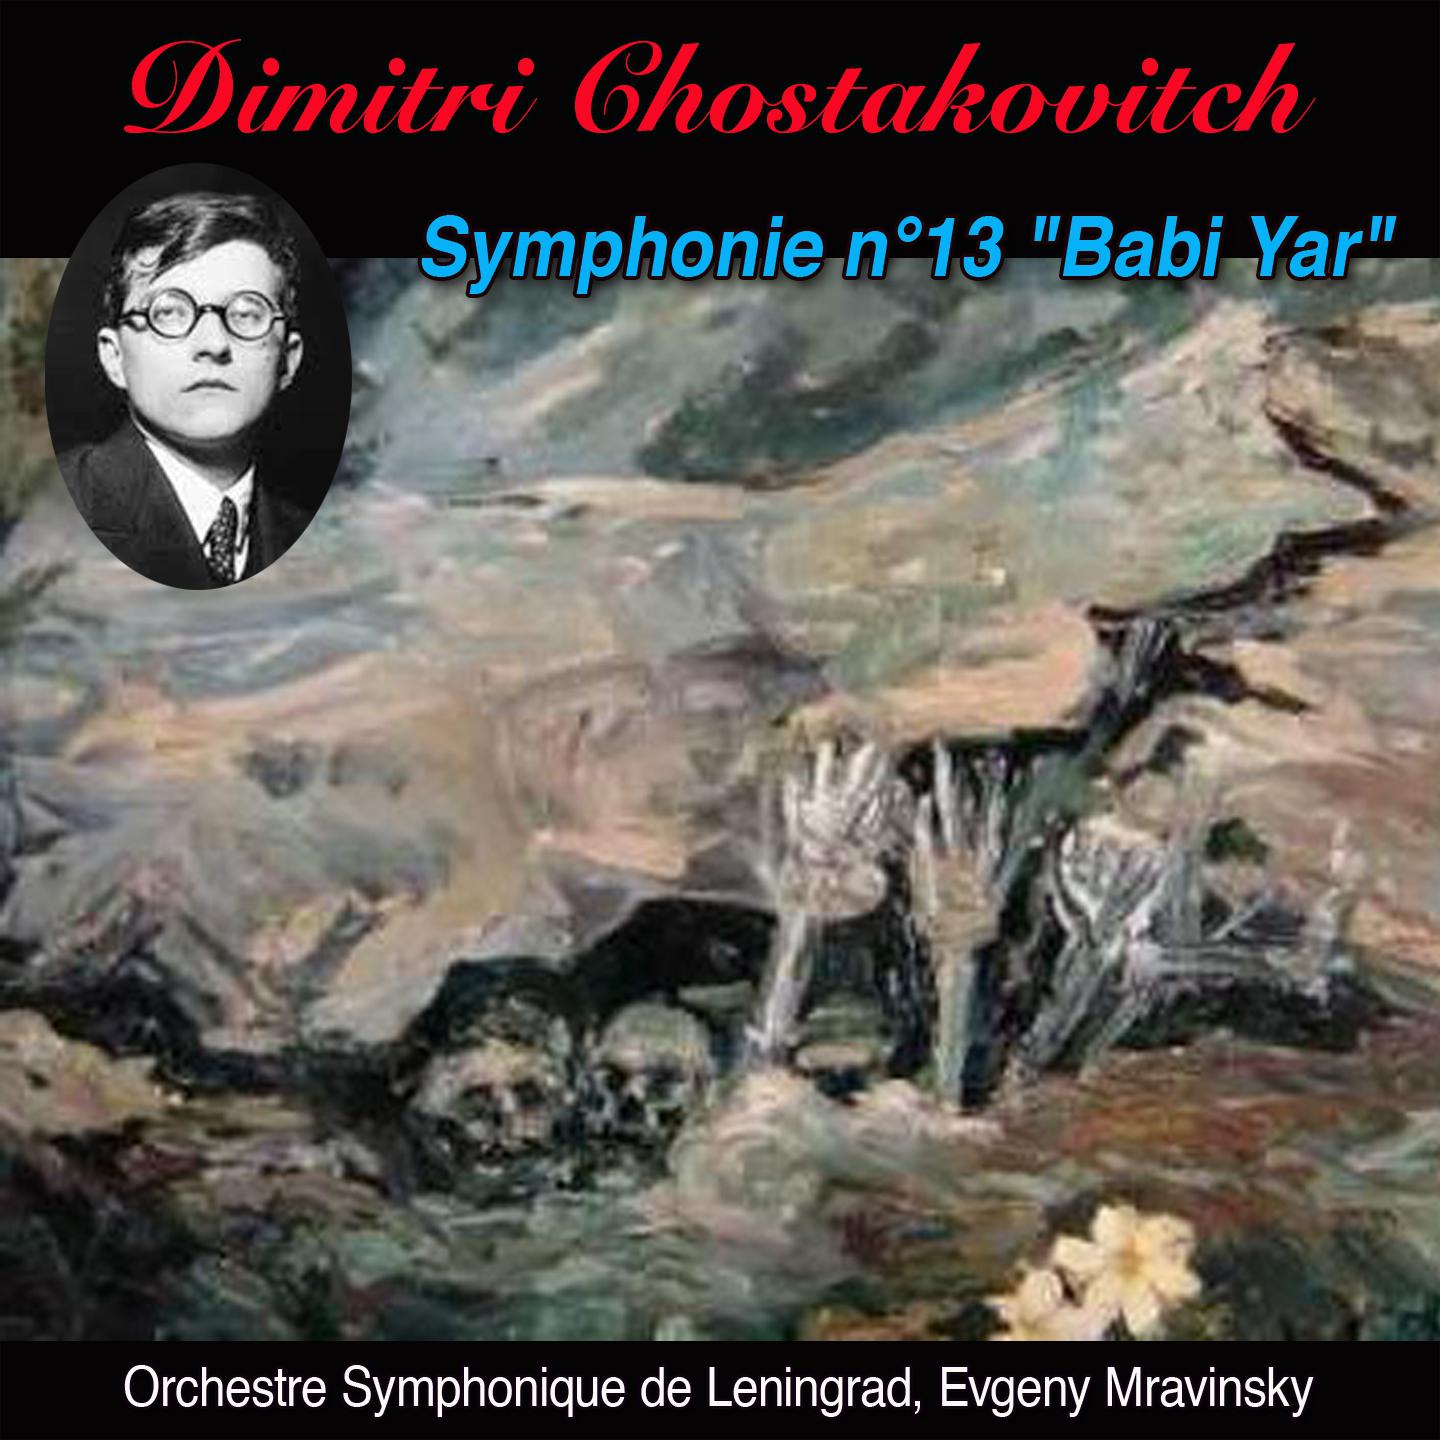 Babi yar adagio non troppo Symphonie n 13 op. 113 " Babi yar"